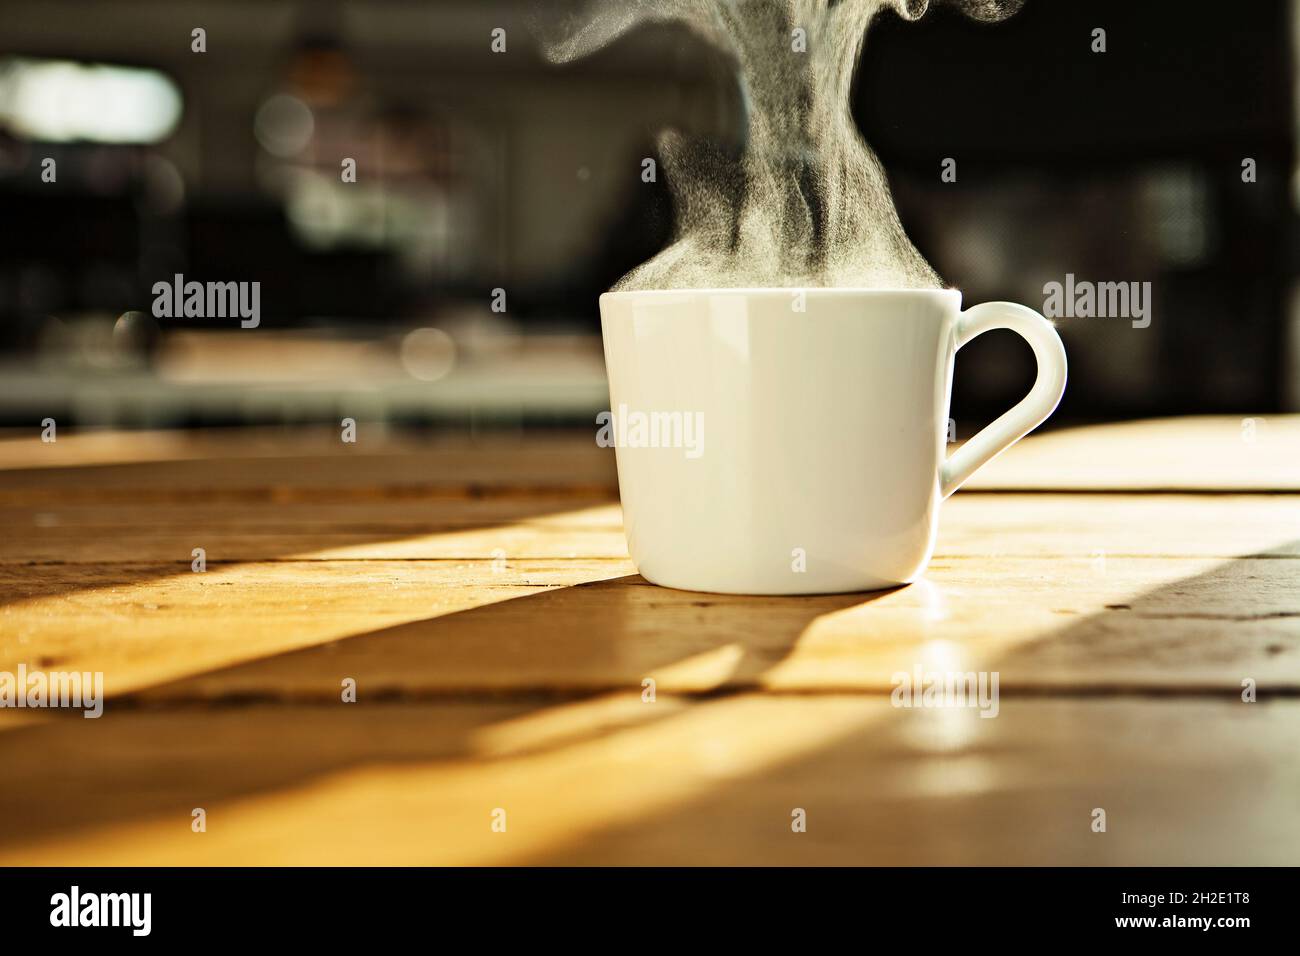 Tazza bianca per tè/caffè, tazza bianca con bevanda calda su un tavolo di legno, retroilluminata. Foto Stock